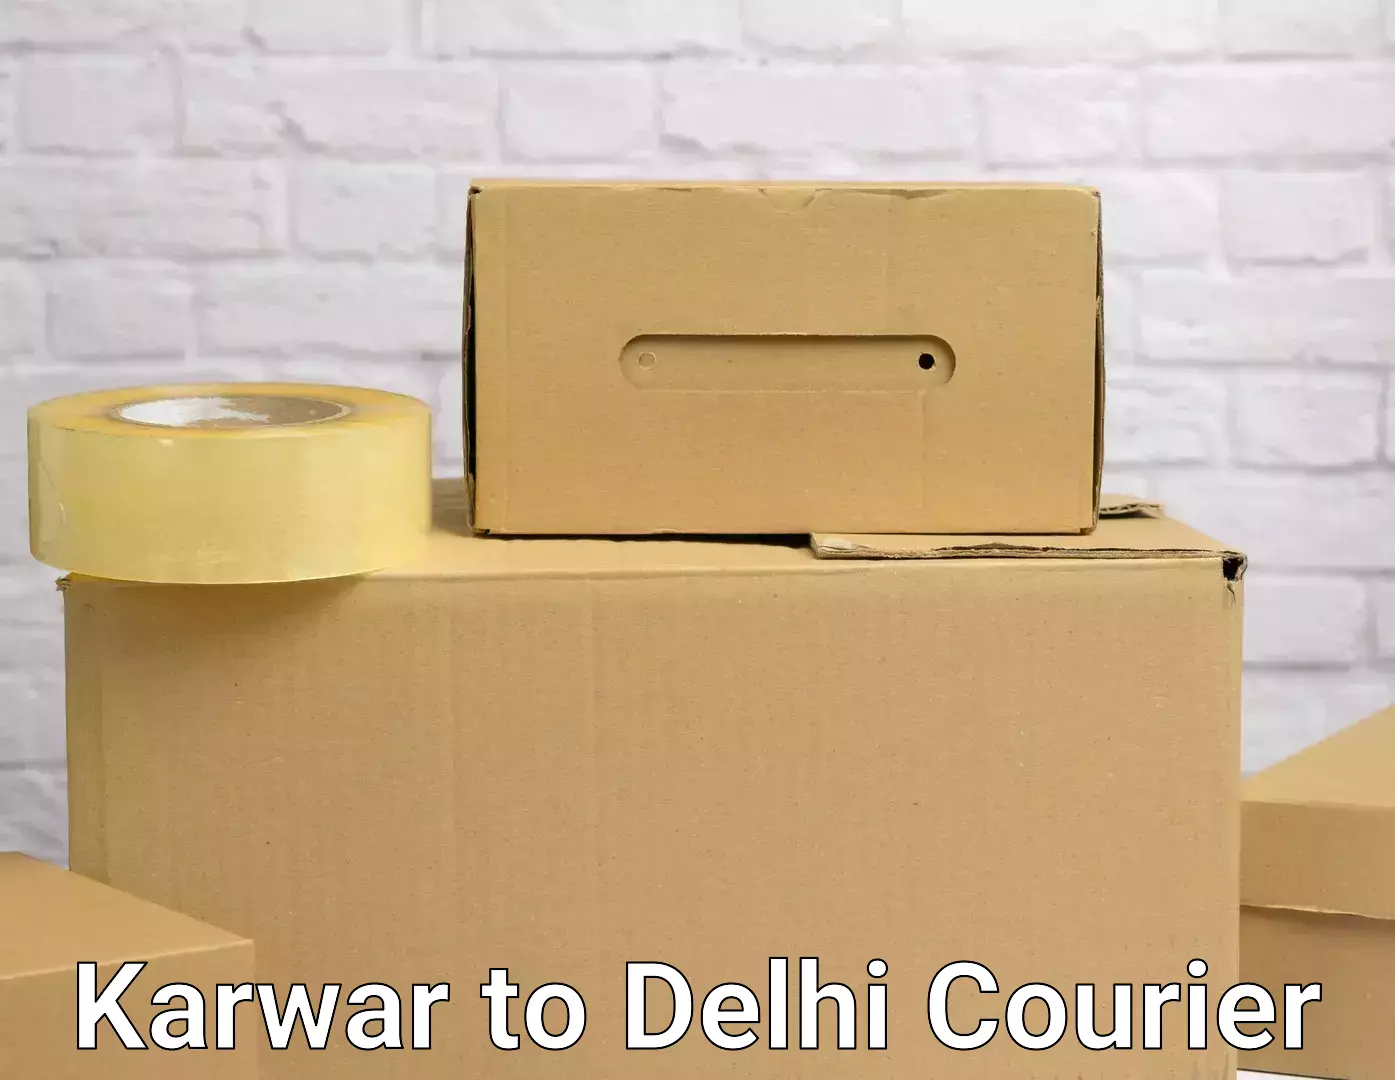 Furniture delivery service Karwar to NCR